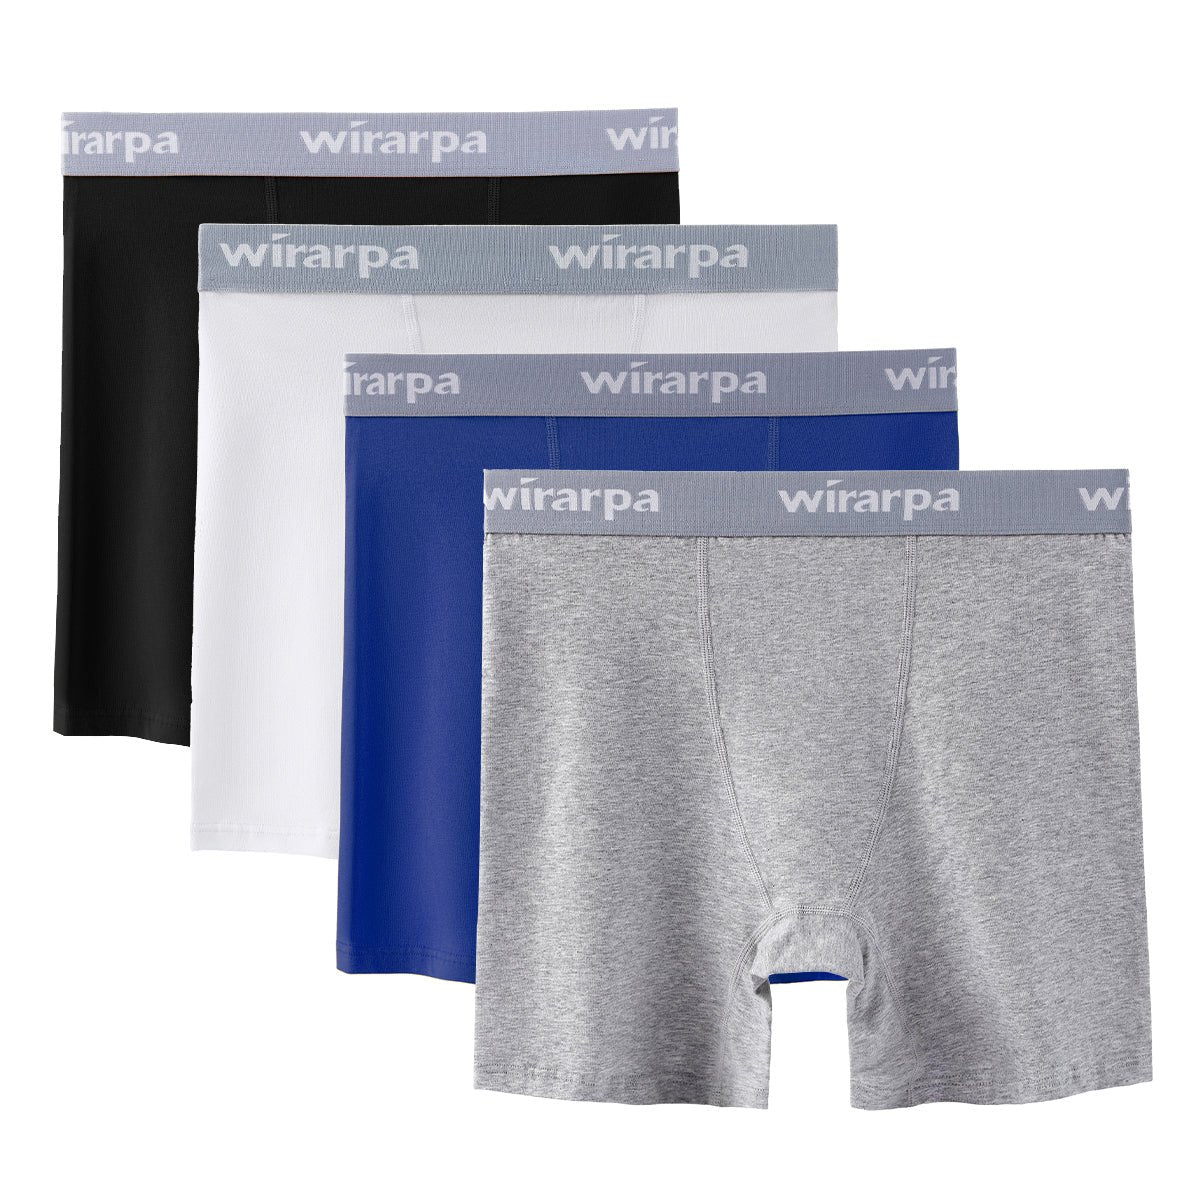  Wirarpa Womens Boxer Briefs Cotton Underwear Anti